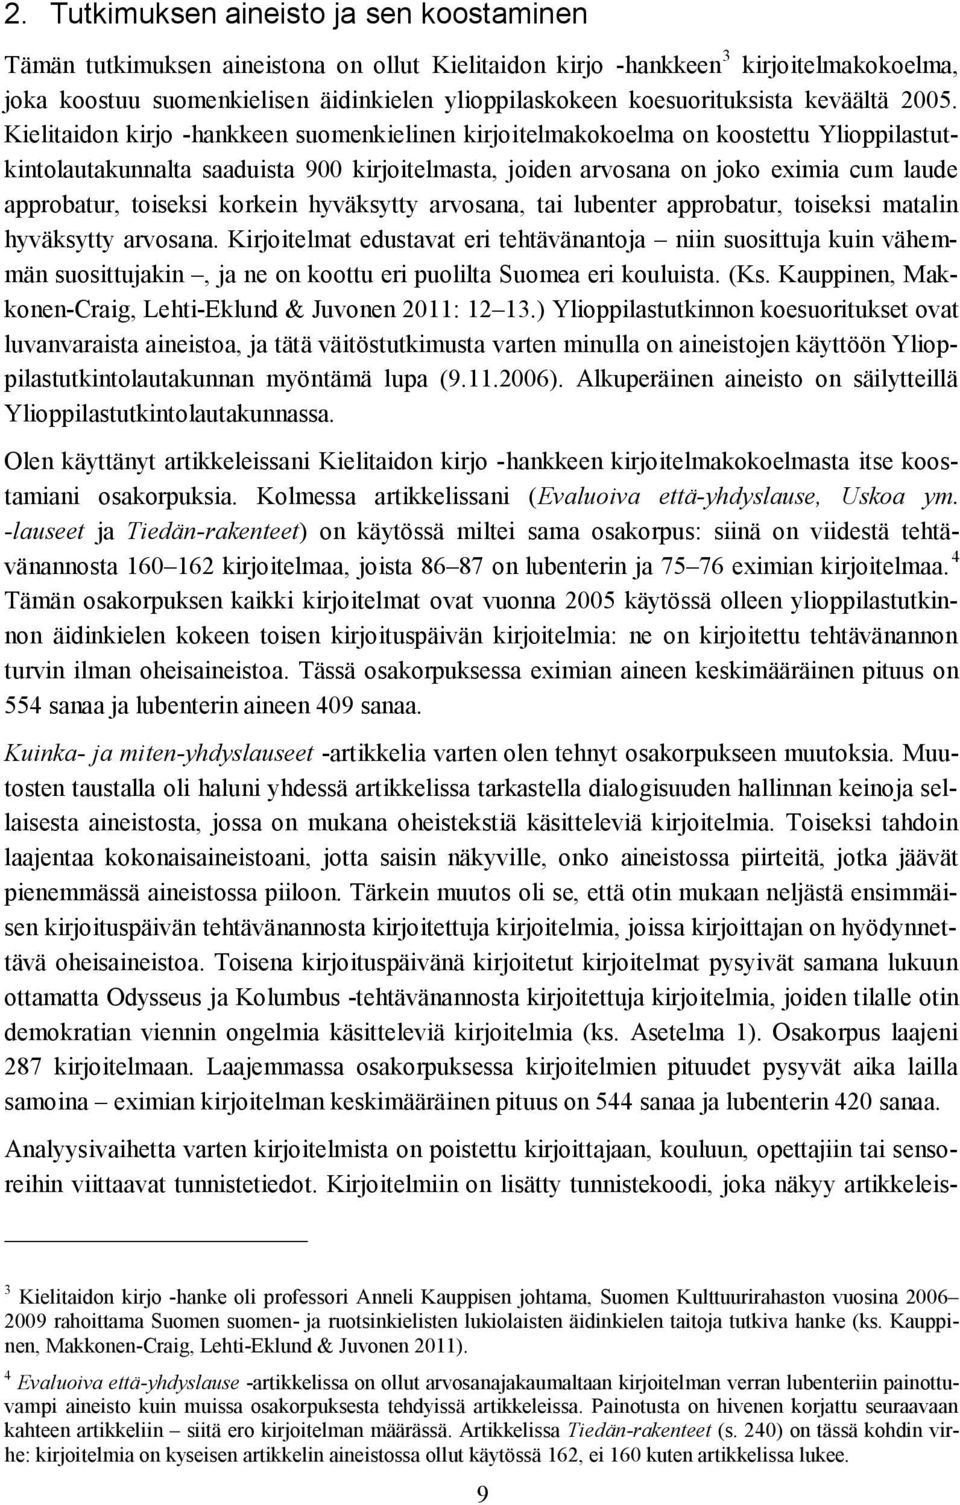 Kielitaidon kirjo -hankkeen suomenkielinen kirjoitelmakokoelma on koostettu Ylioppilastutkintolautakunnalta saaduista 900 kirjoitelmasta, joiden arvosana on joko eximia cum laude approbatur, toiseksi